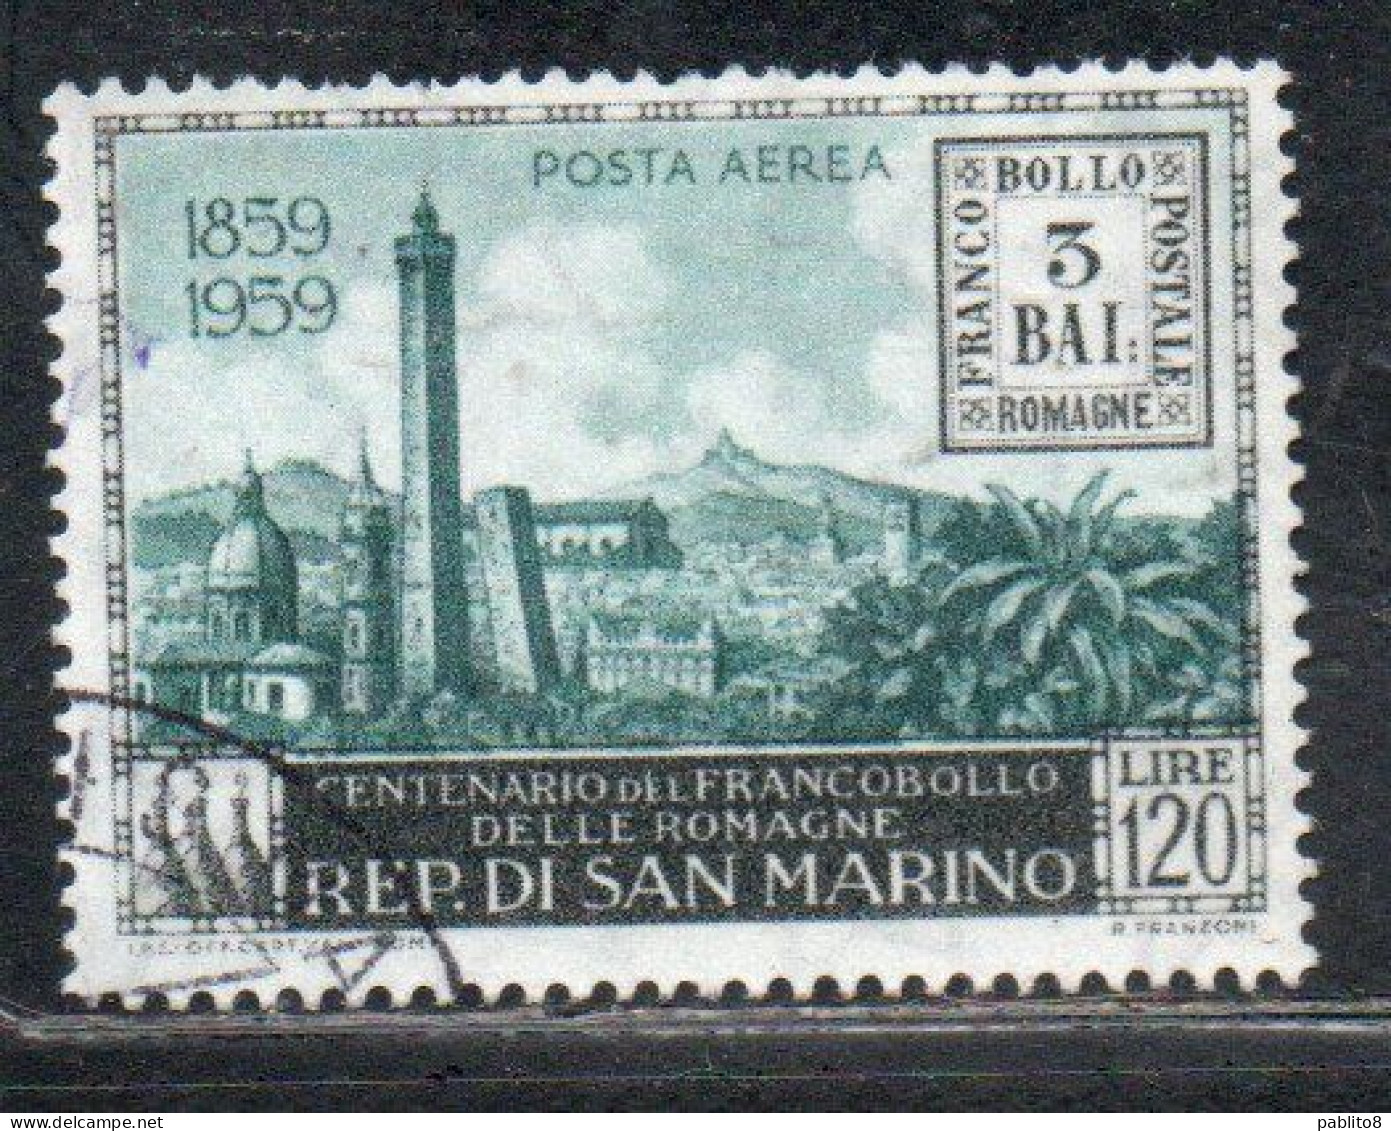 REPUBBLICA DI SAN MARINO 1959 POSTA AEREA AIR MAIL CENTENARIO FRANCOBOLLI ROMAGNE LIRE 120 USATO USED OBLITERE' - Used Stamps